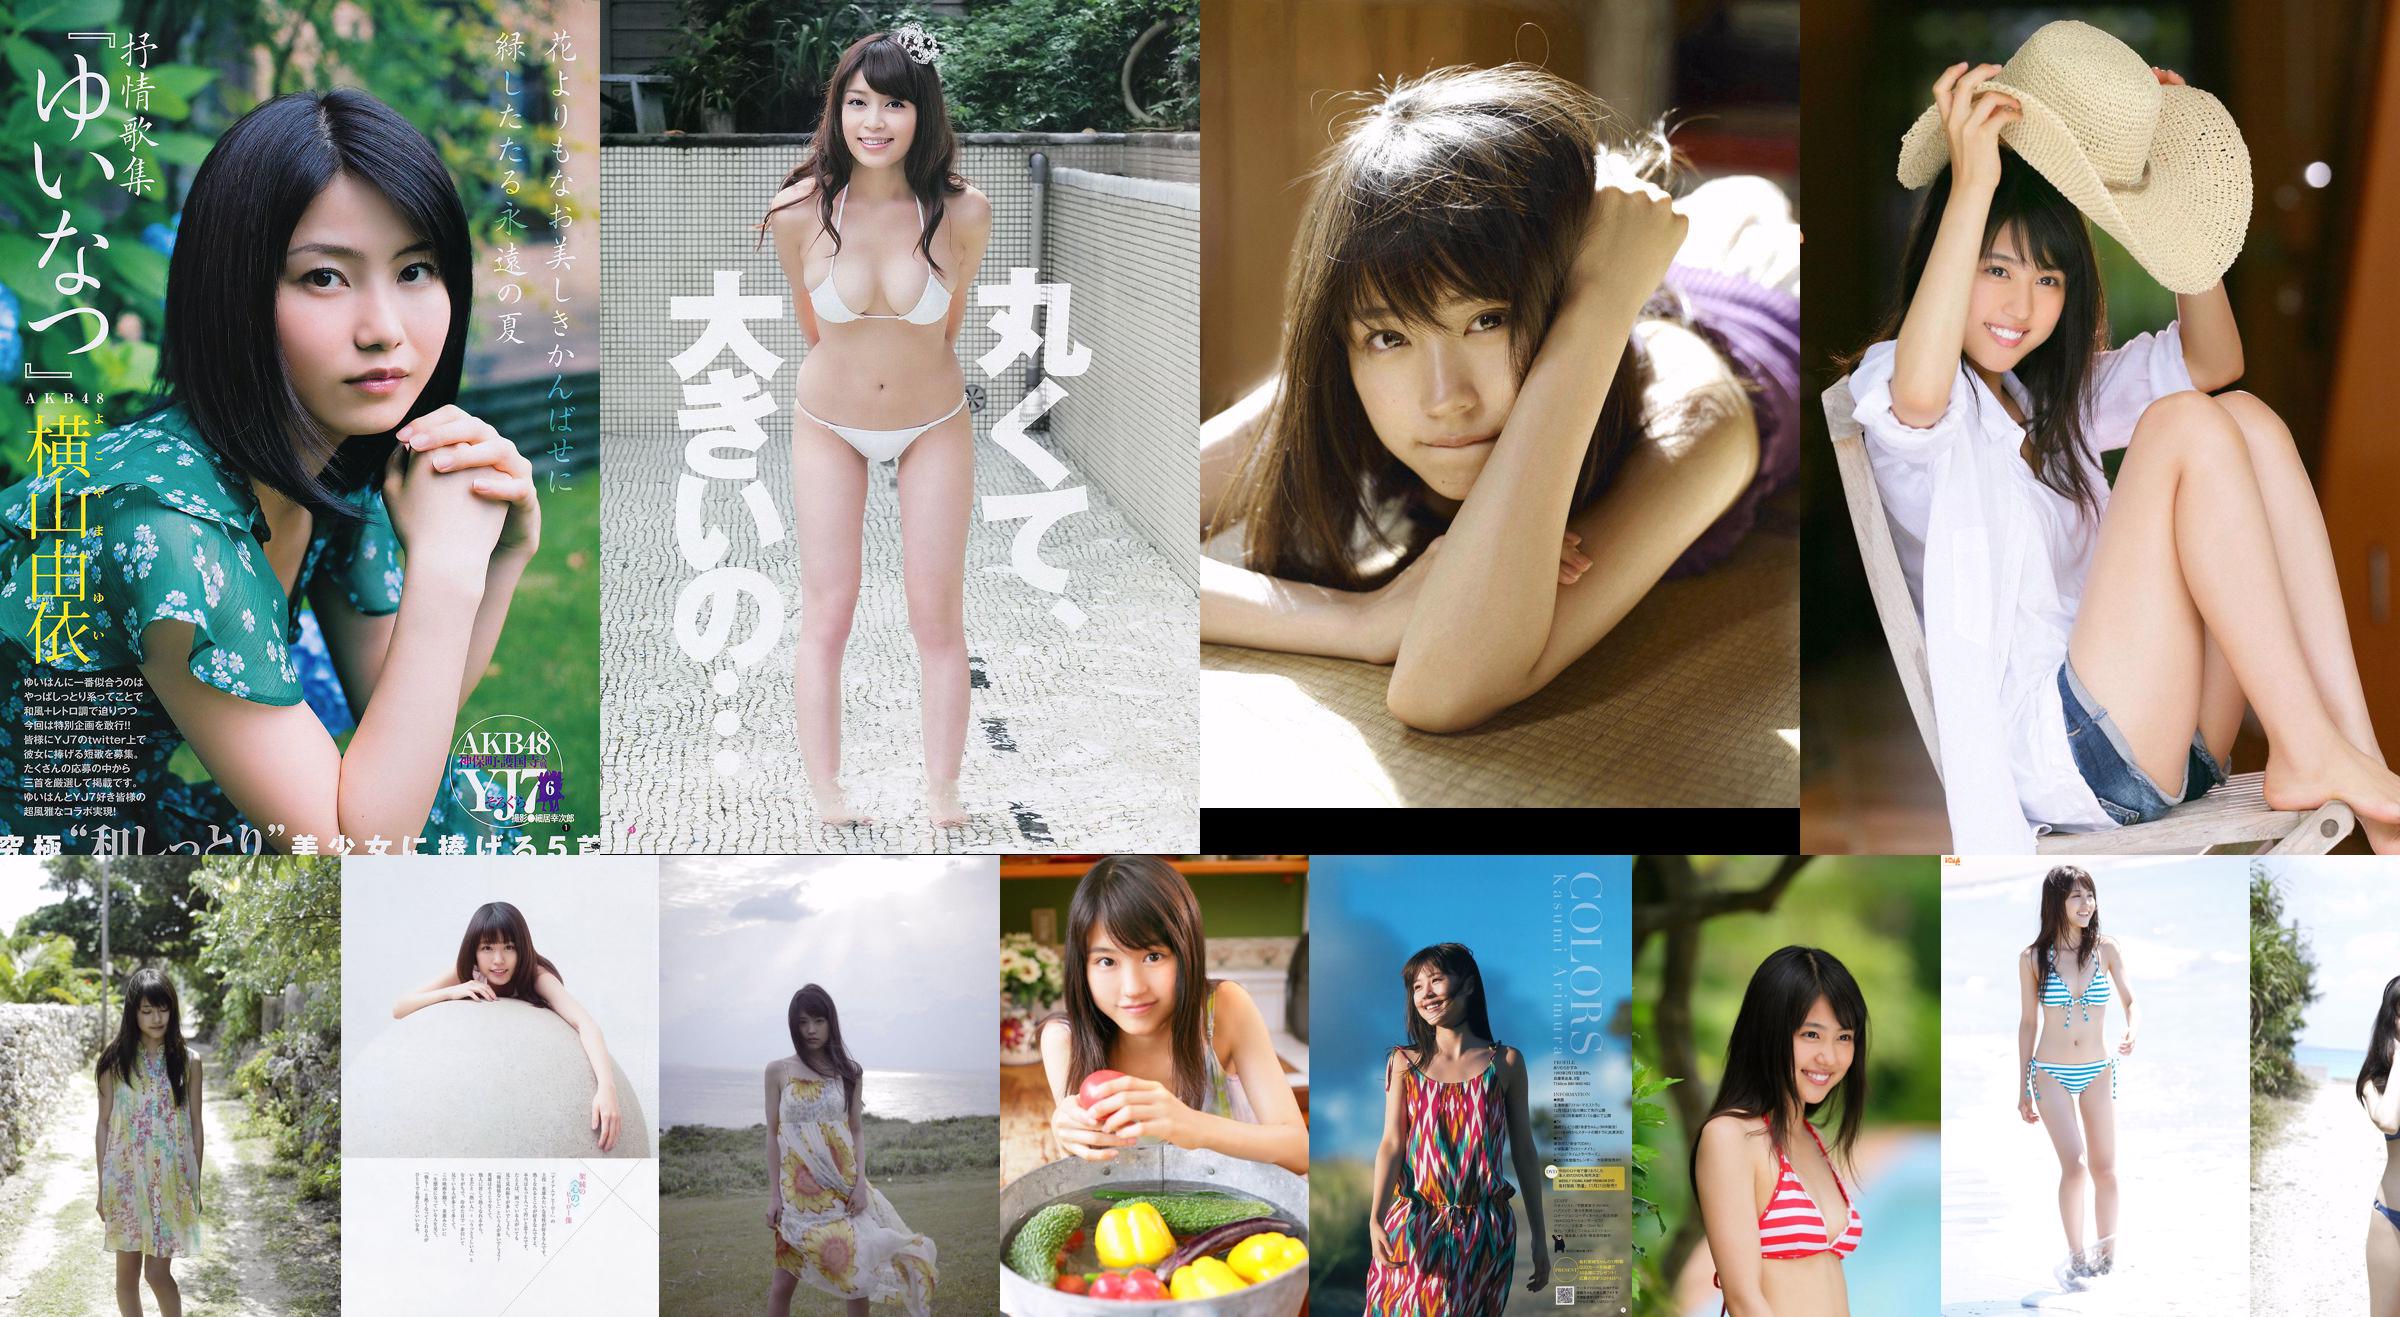 [DGC] NO.809 Miyu Hoshino Miyu Hoshino / Miyu Hoshino ídolos adultos No.a992aa Página 1